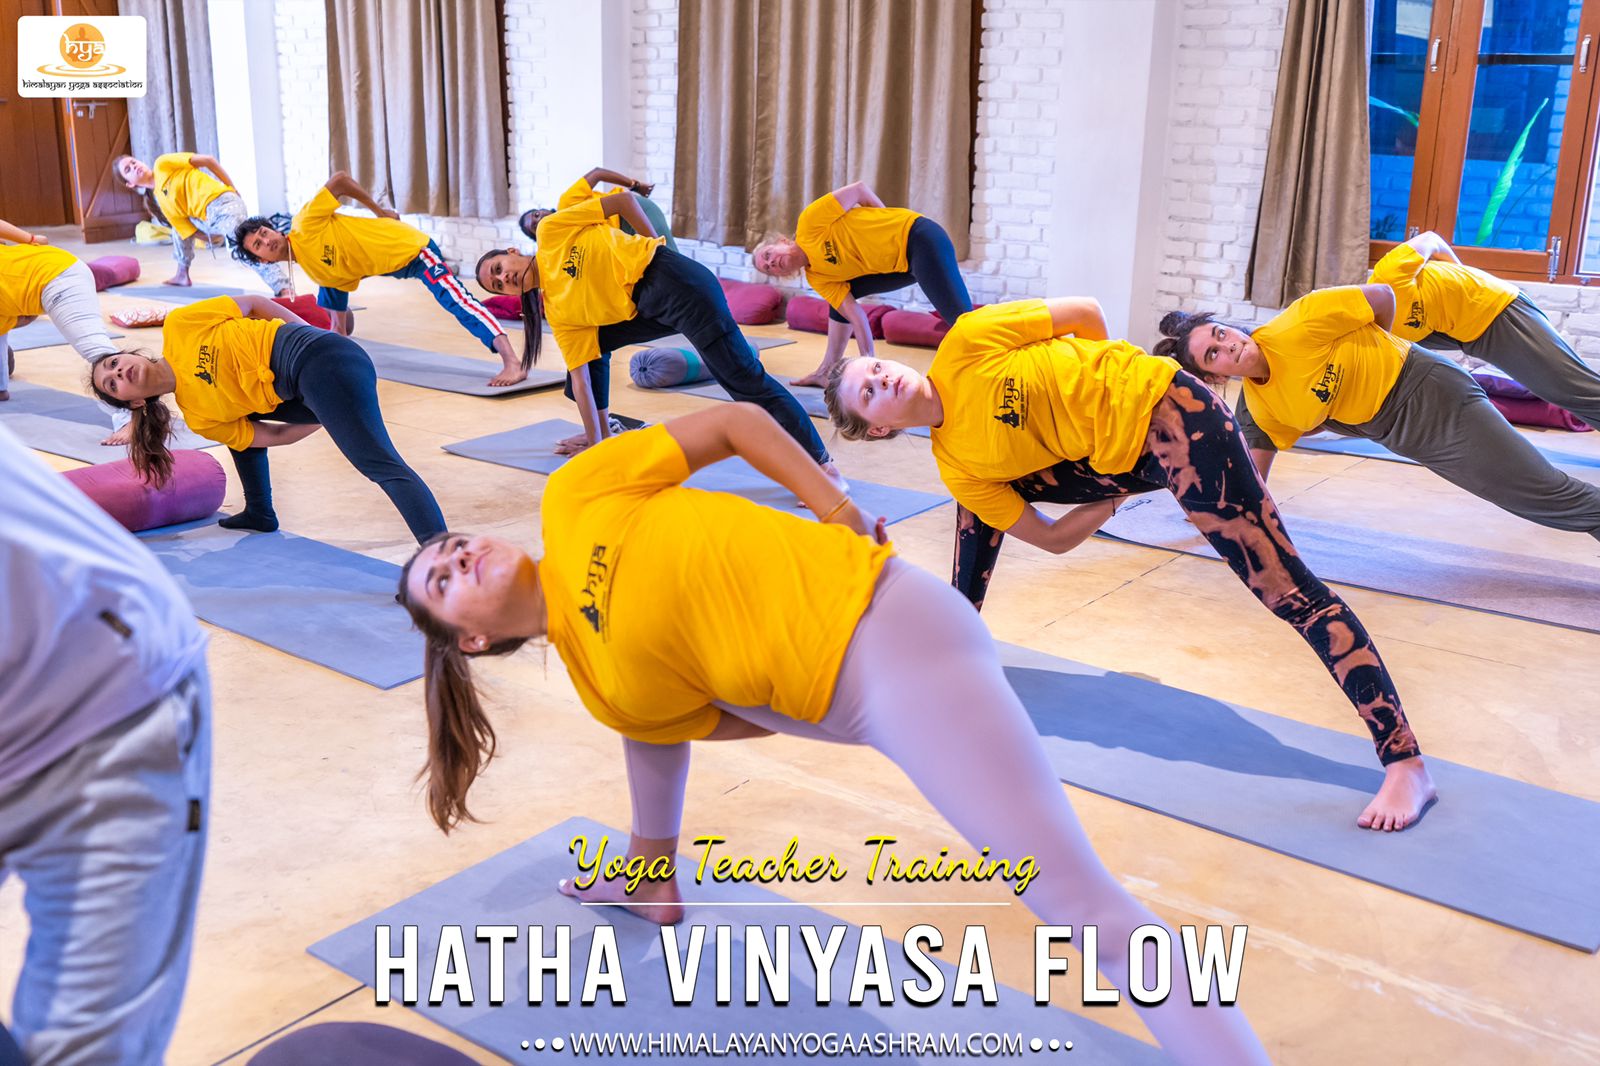 hatha vinyasa yoga